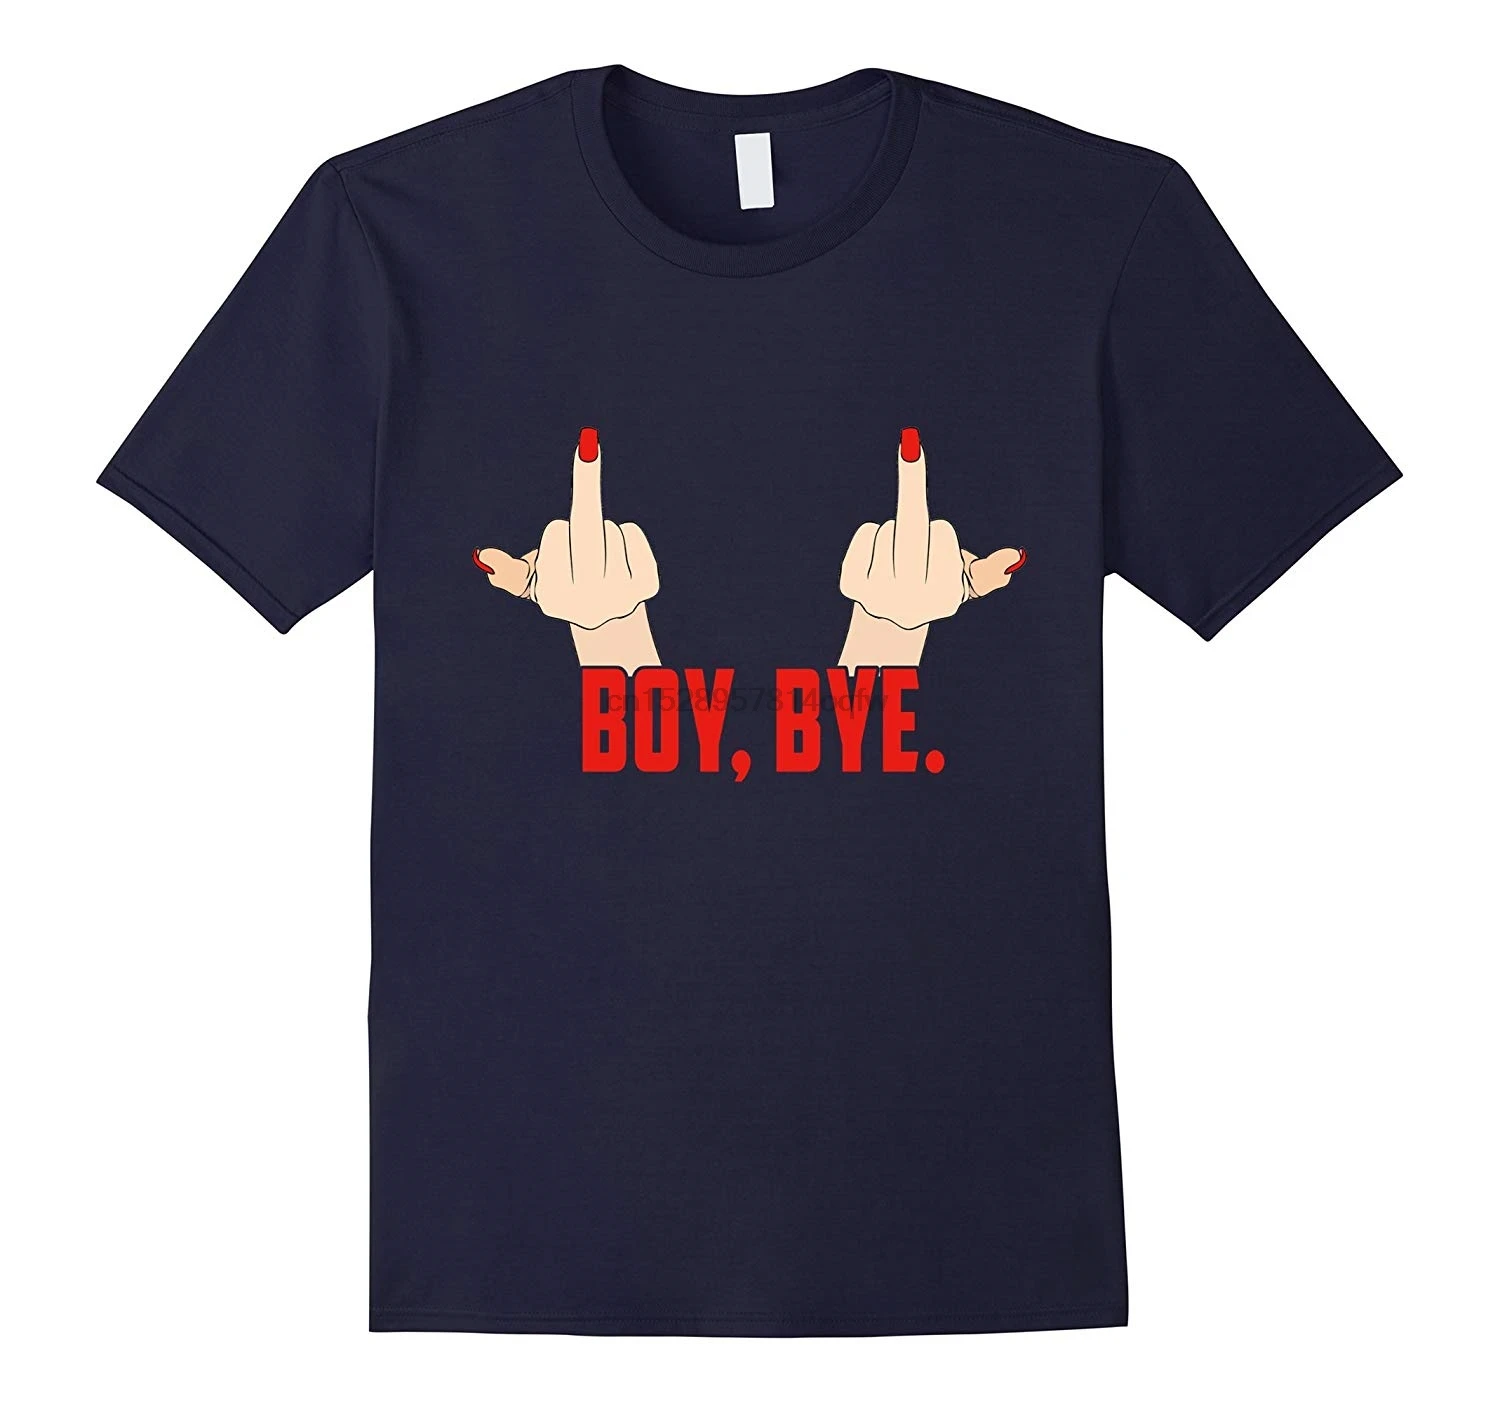 Мужская футболка для мальчиков с неоновыми буквами и надписью | Мужские футболки -4000641401769